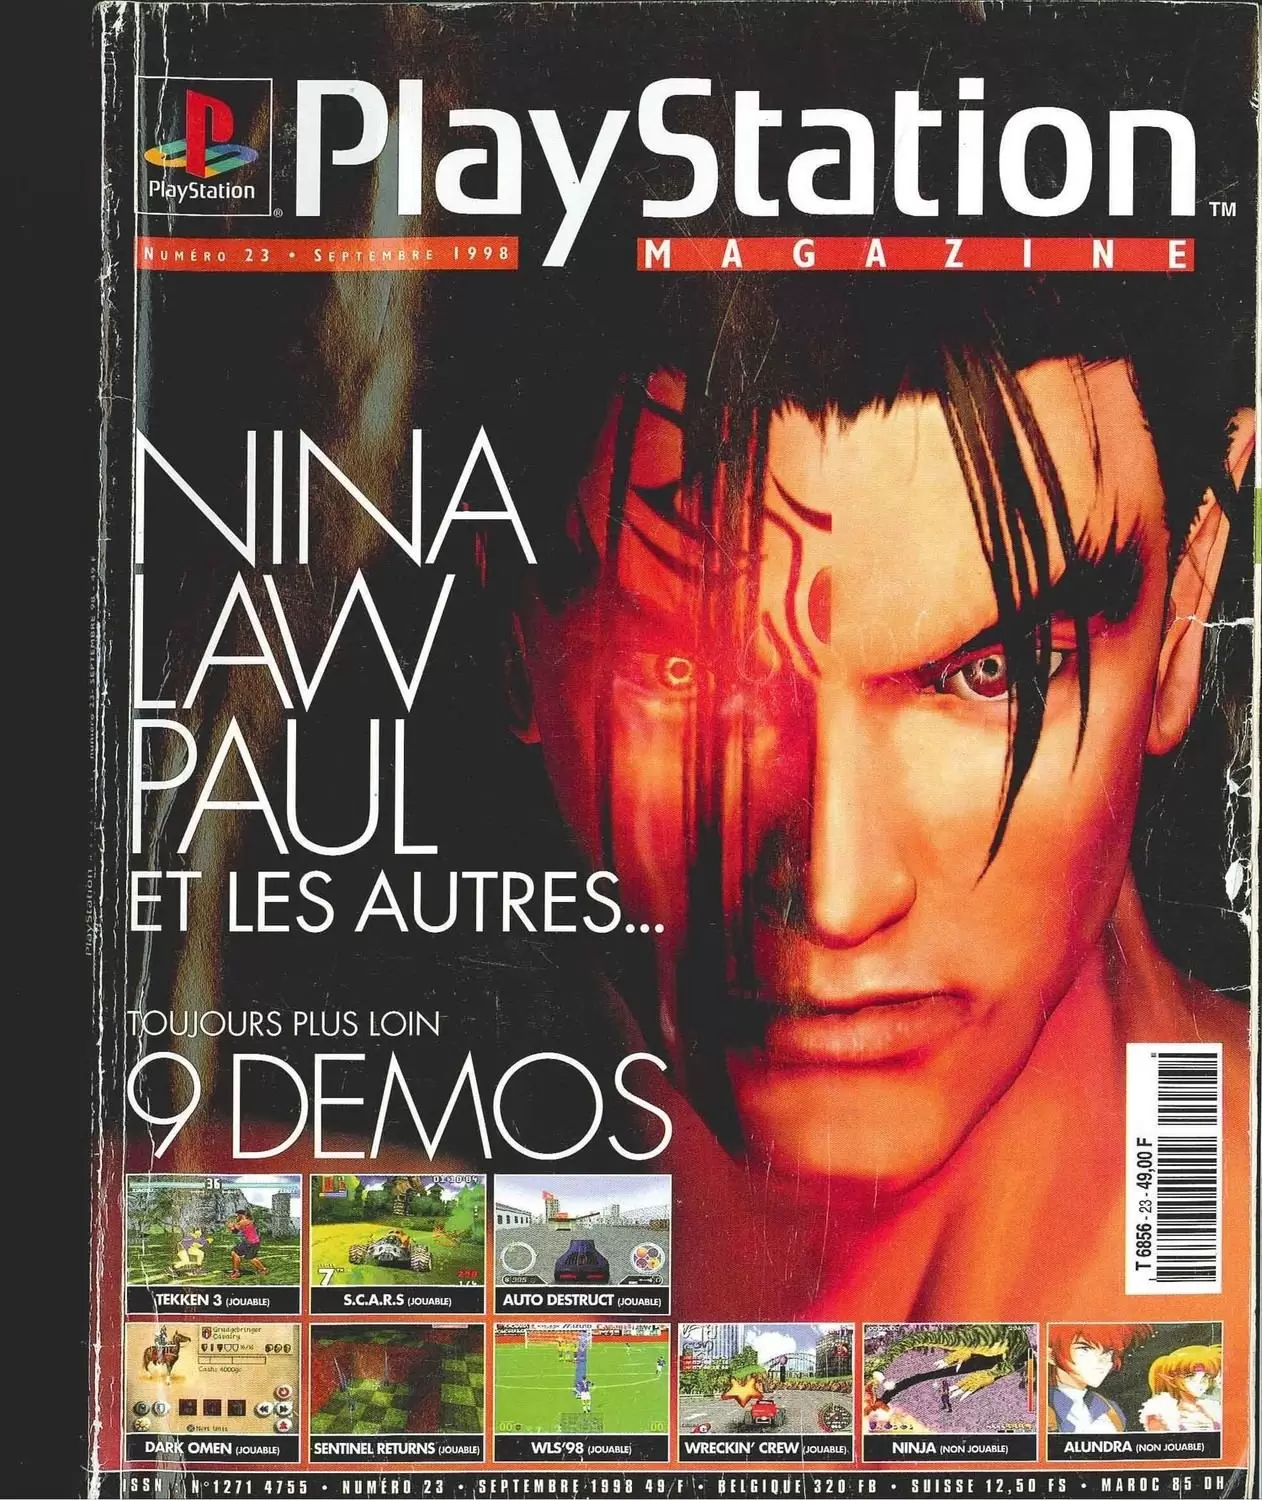 Playstation Magazine - Playstation Magazine #23